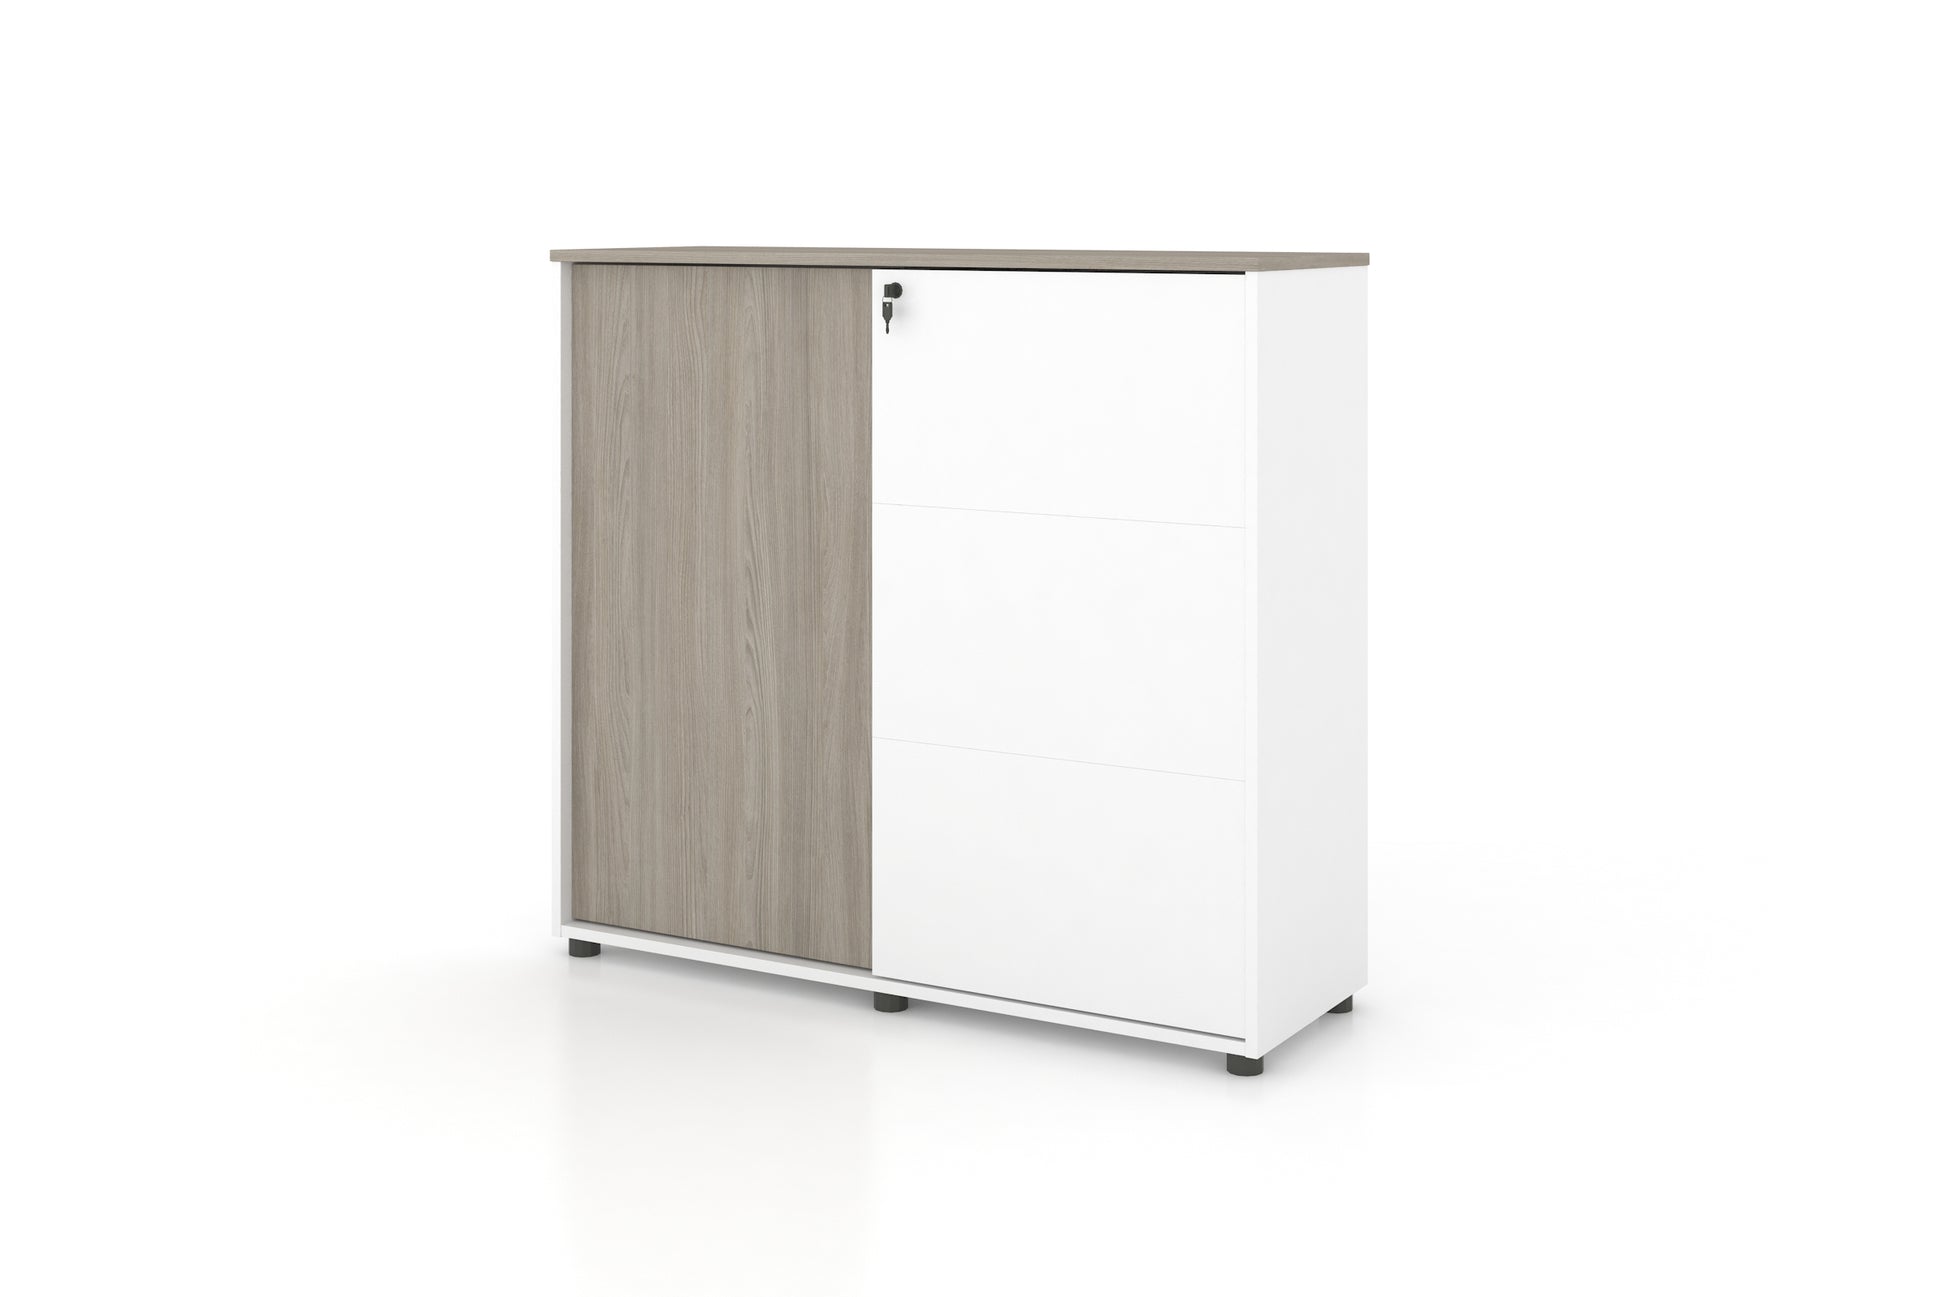 Universal 3-Level Cabinet (White Body) Consumer KANO CF41 Nash Oak One Side Sliding 8-10 Weeks